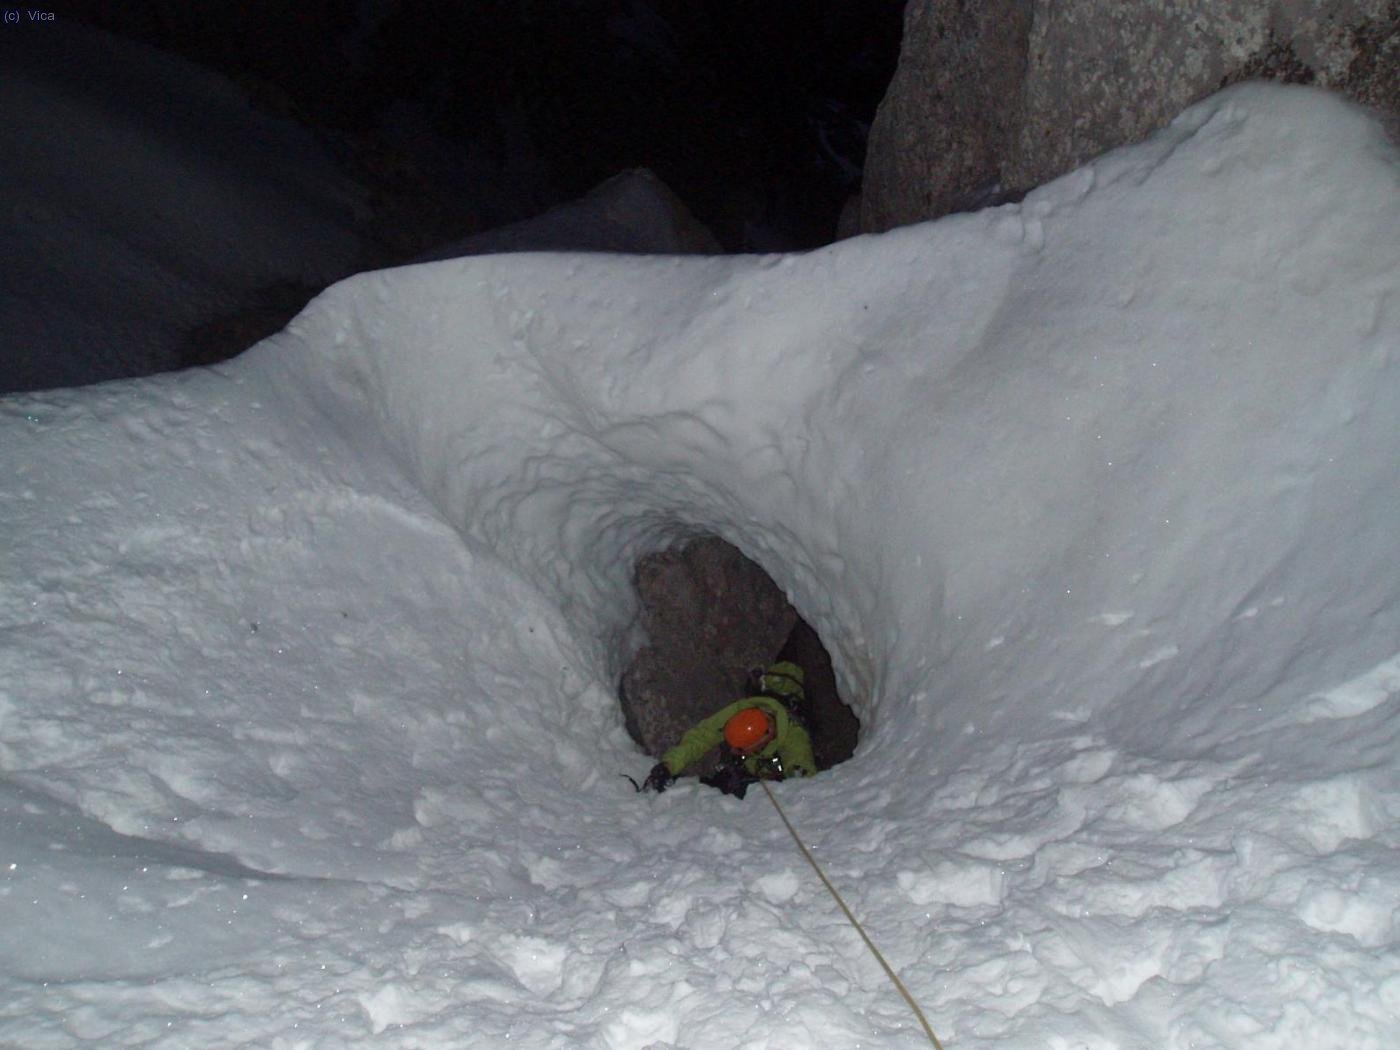 Precioso el túnel de nieve que se tiene que superar